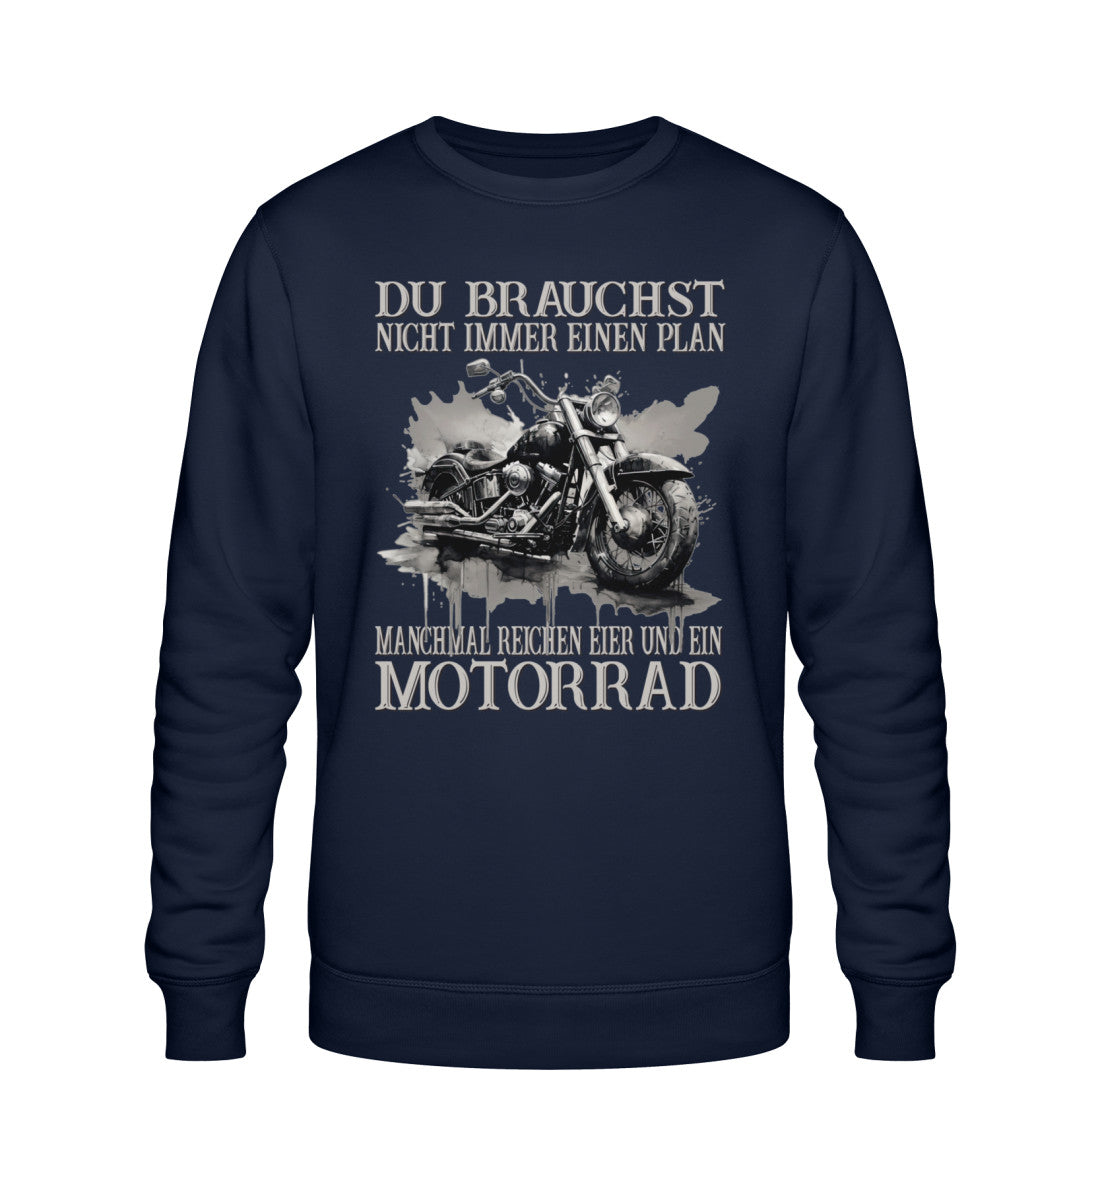 Ein Sweatshirt für Motorradfahrer von Wingbikers mit dem Aufdruck, Du brauchst nicht immer einen Plan - Manchmal reichen Eier und ein Motorrad, in navy blau.